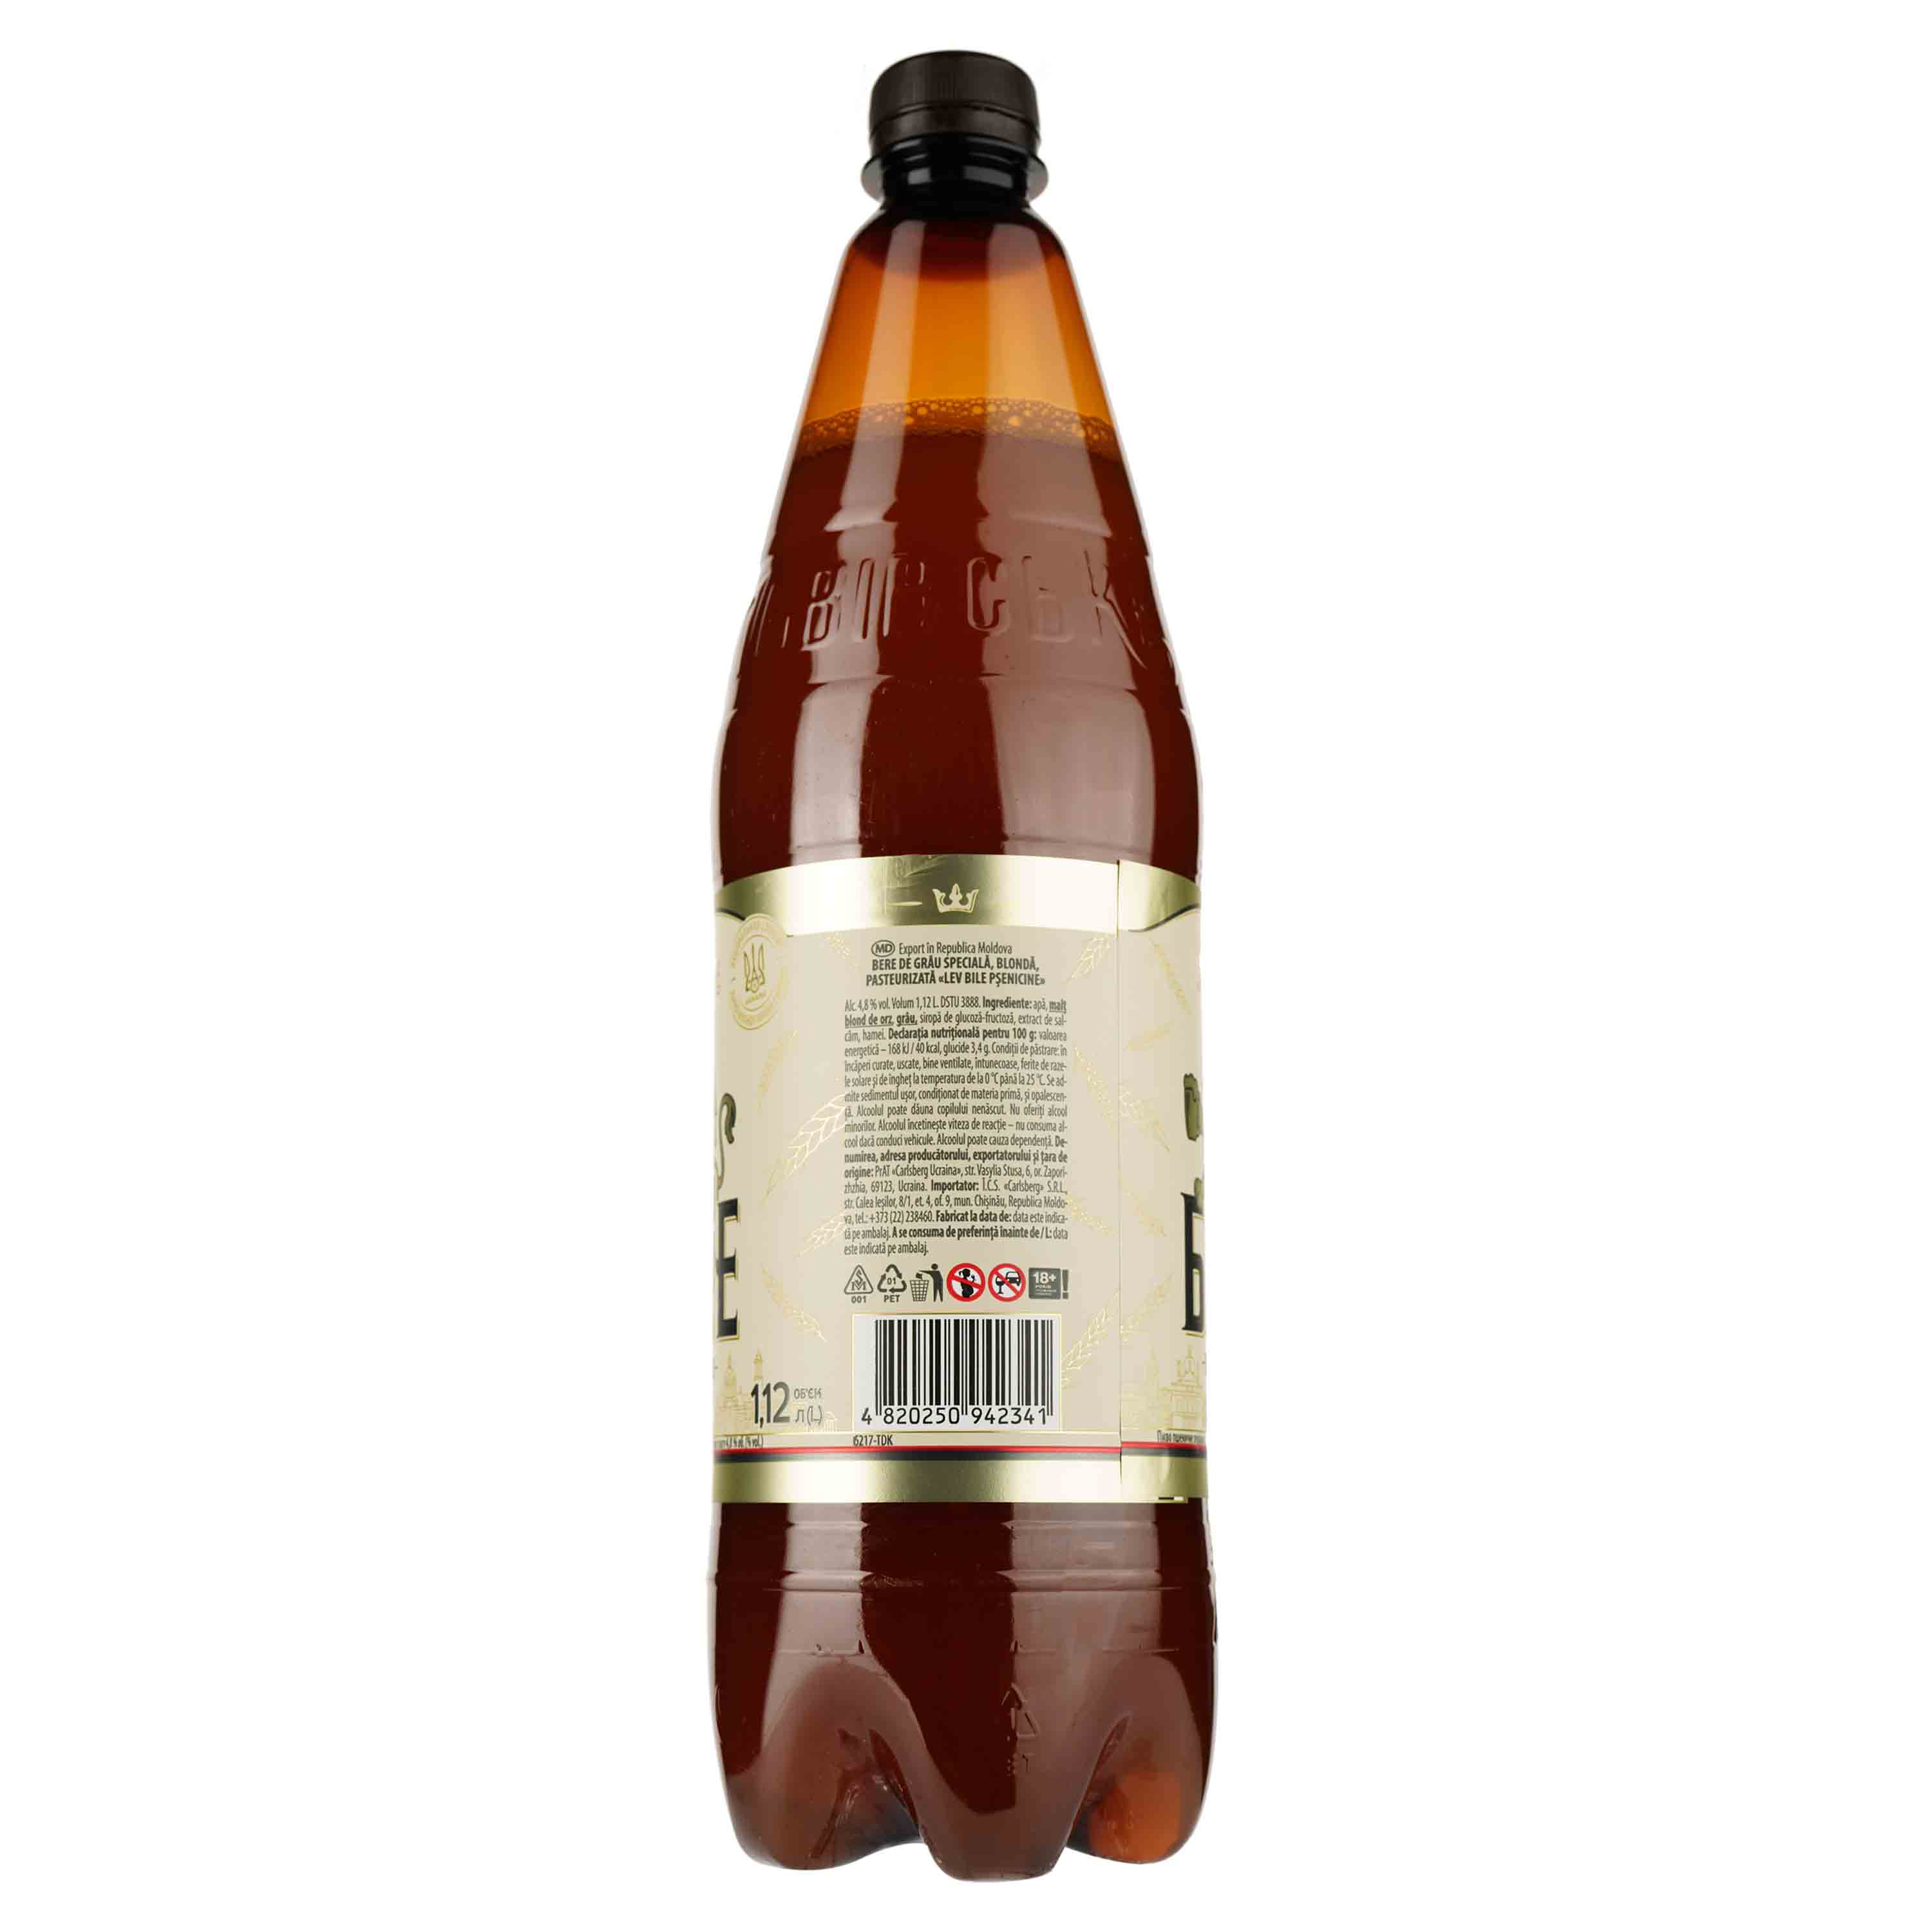 Пиво Львівське Лев белое, фильтрованное, 4,8%, 1,12 л - фото 2